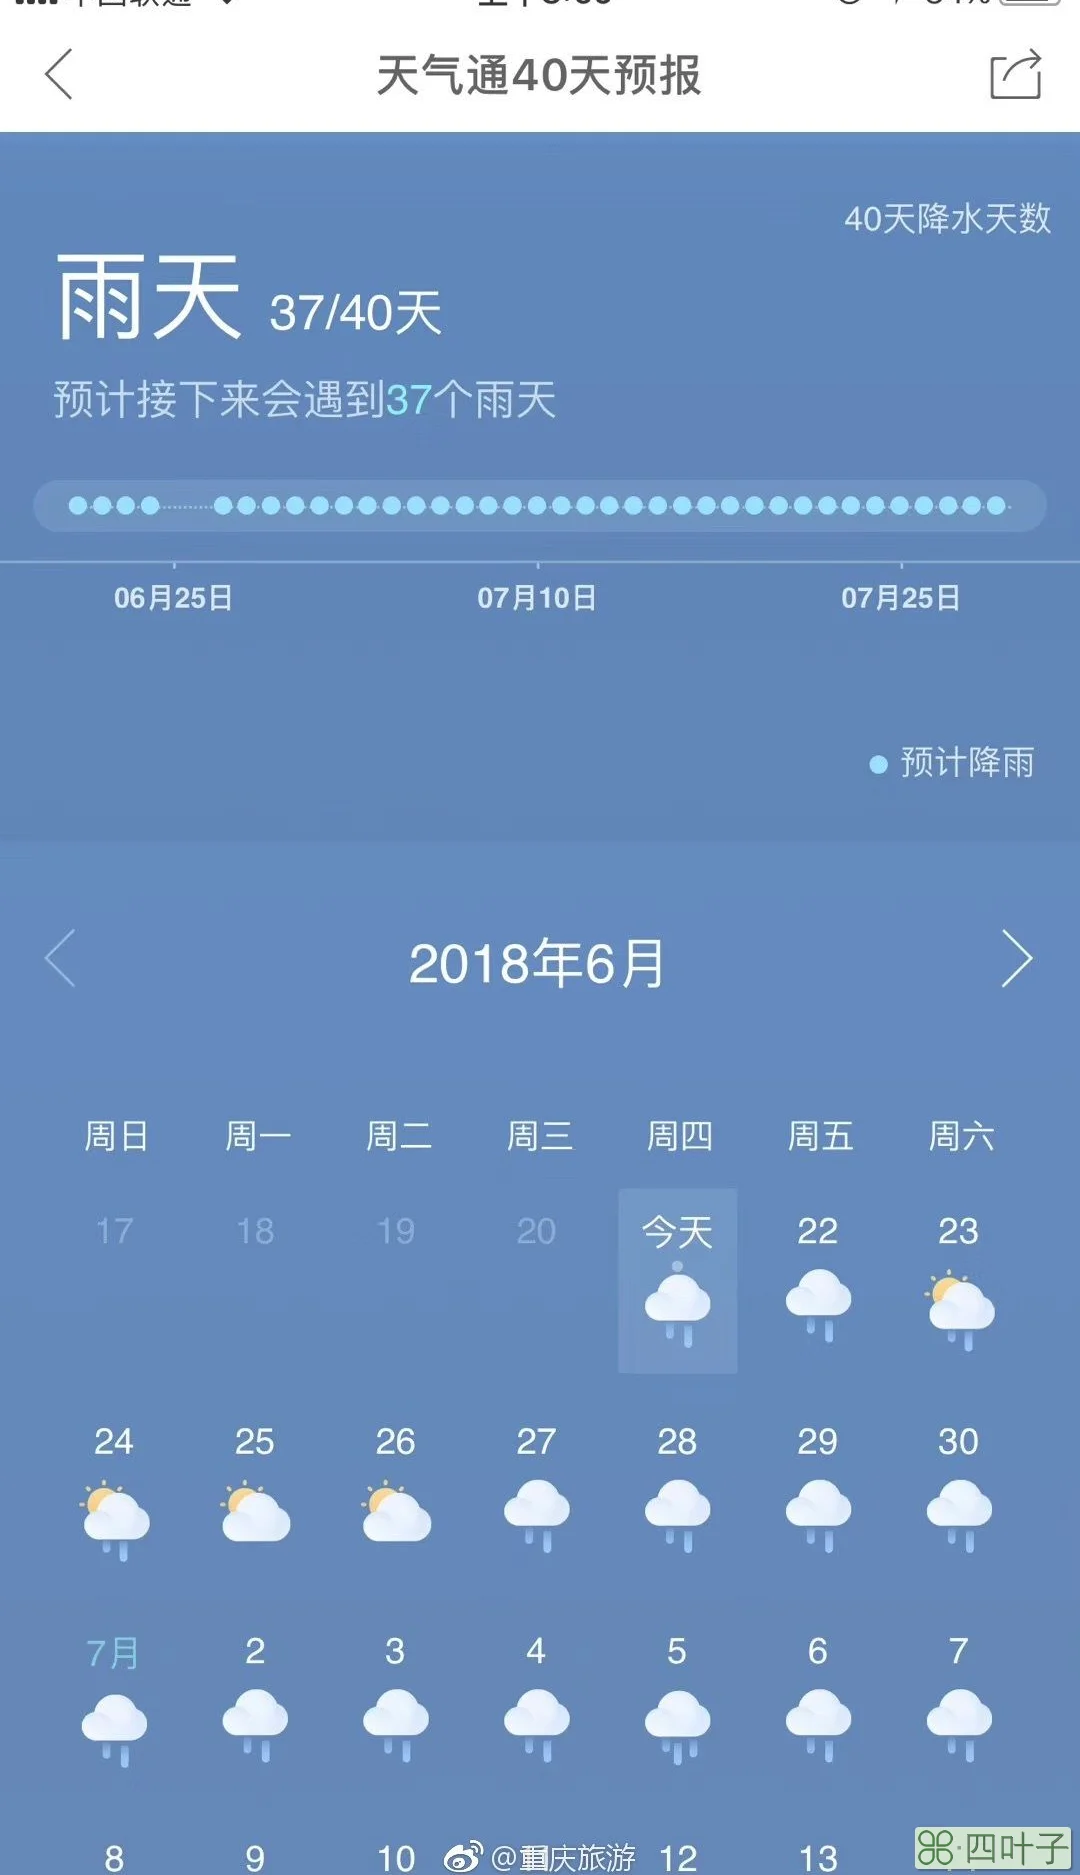 北京天气预报40日北京天气预报40天准确